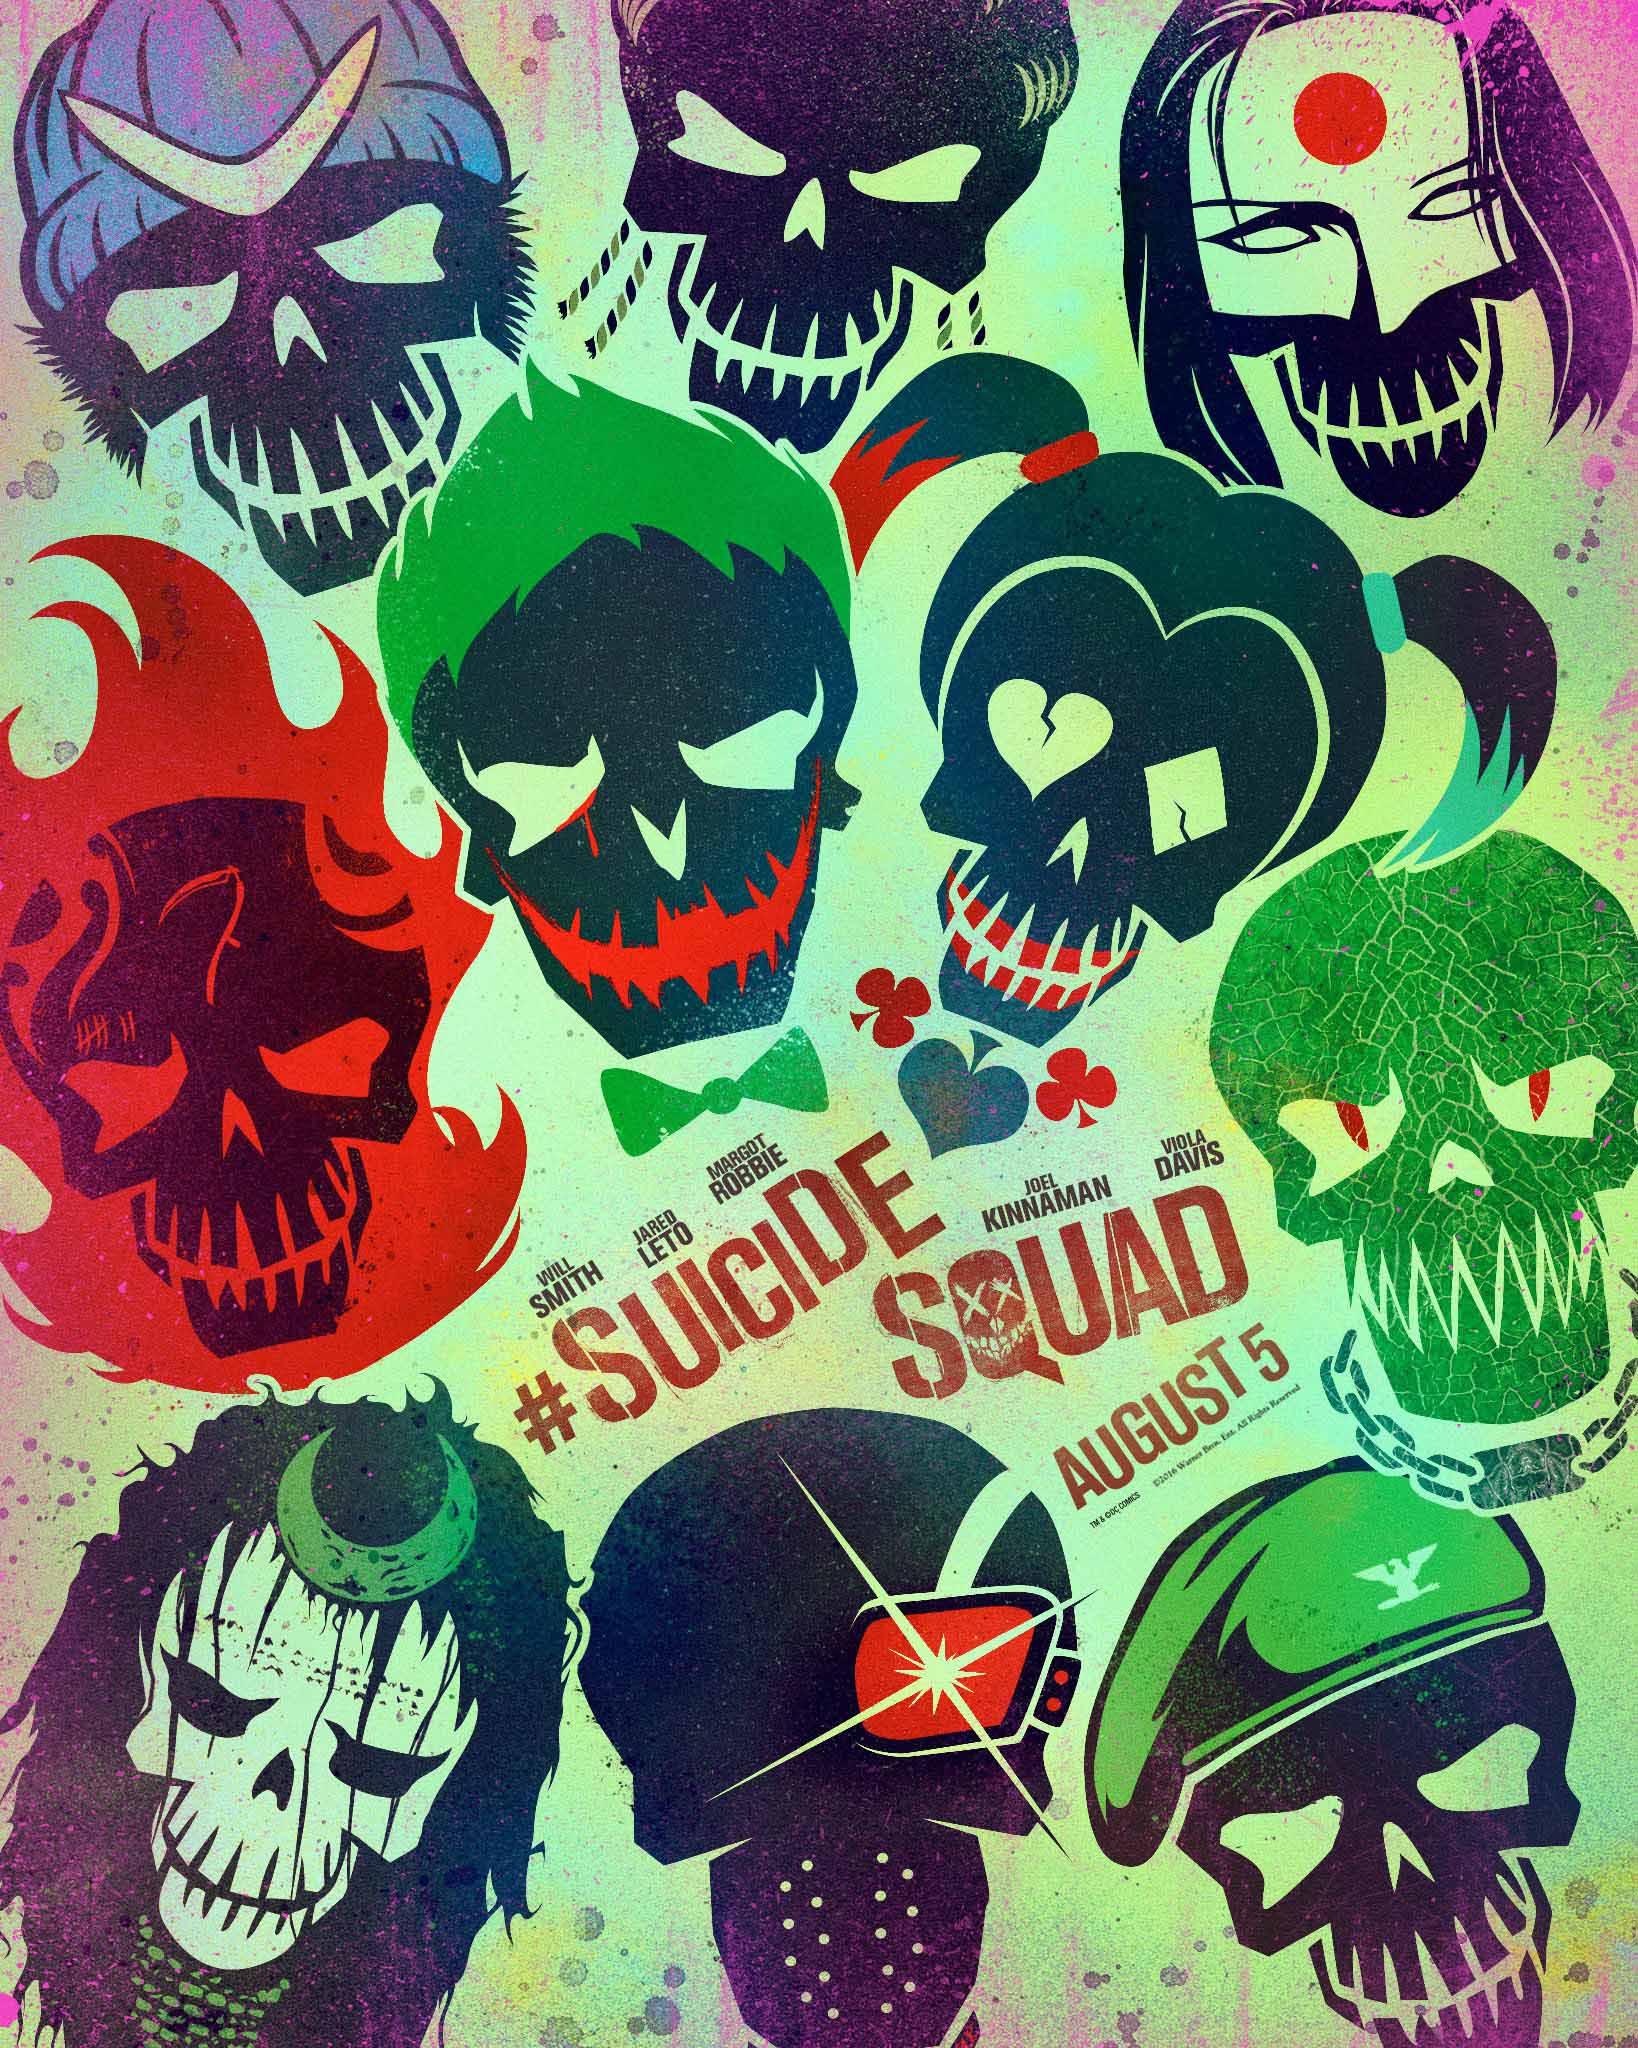 Suicide Squad #21